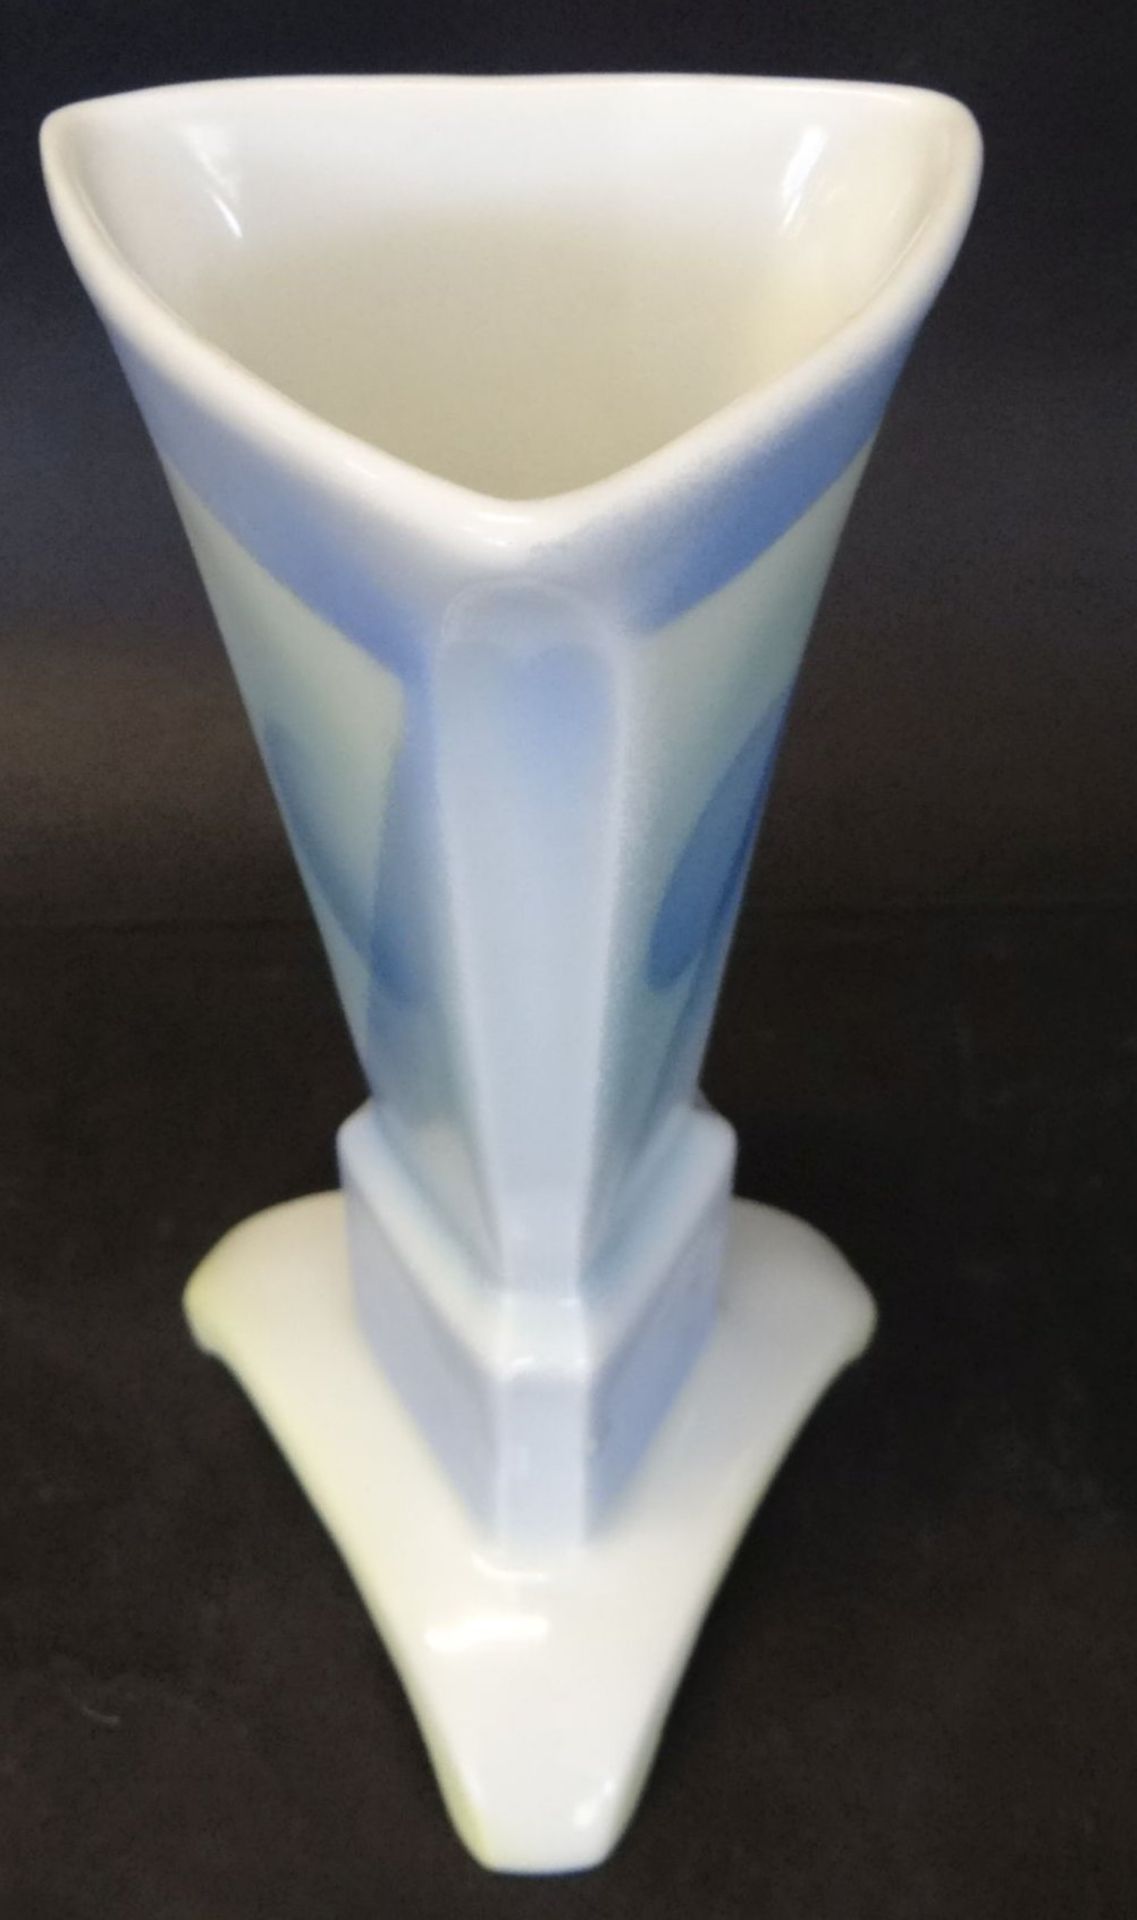 Dreiceckige Art Deko Vase mit Spritzgussdekor "Kaestner-Saxonia", H-17 cm, 9x9 cm - Bild 4 aus 5